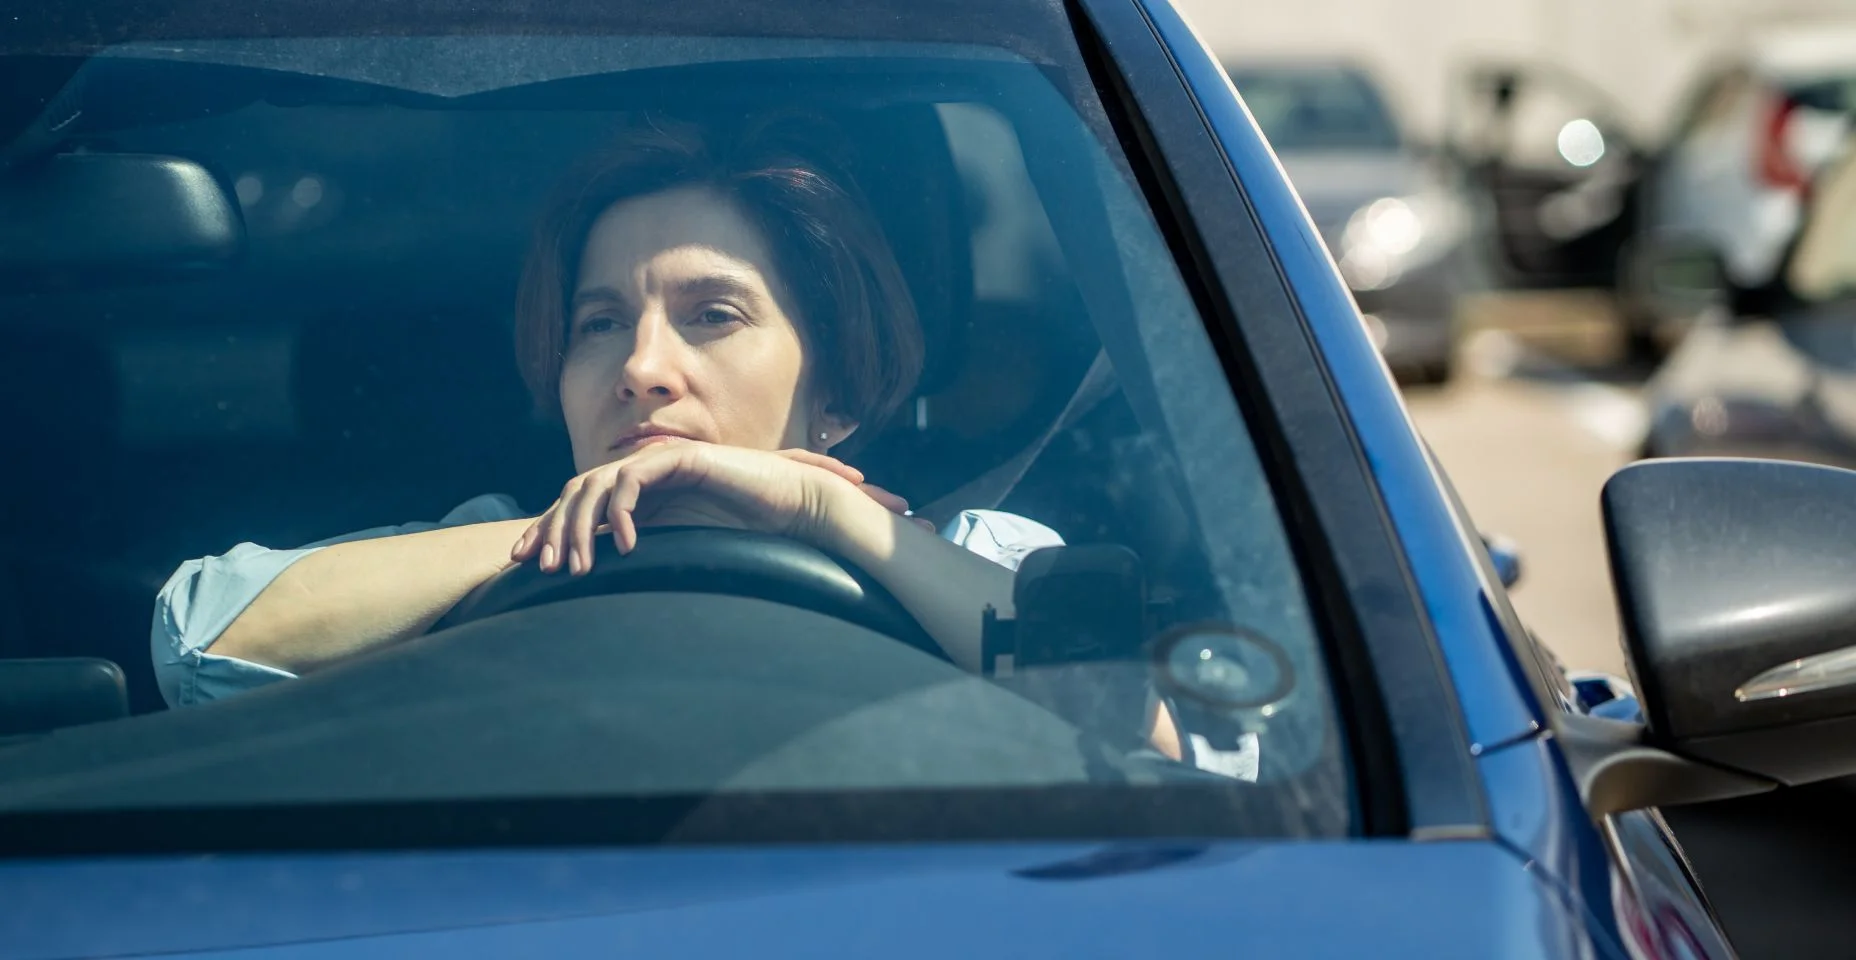 Deprimida, estressada, motorista de meia idade senta-se no carro no estacionamento da cidade